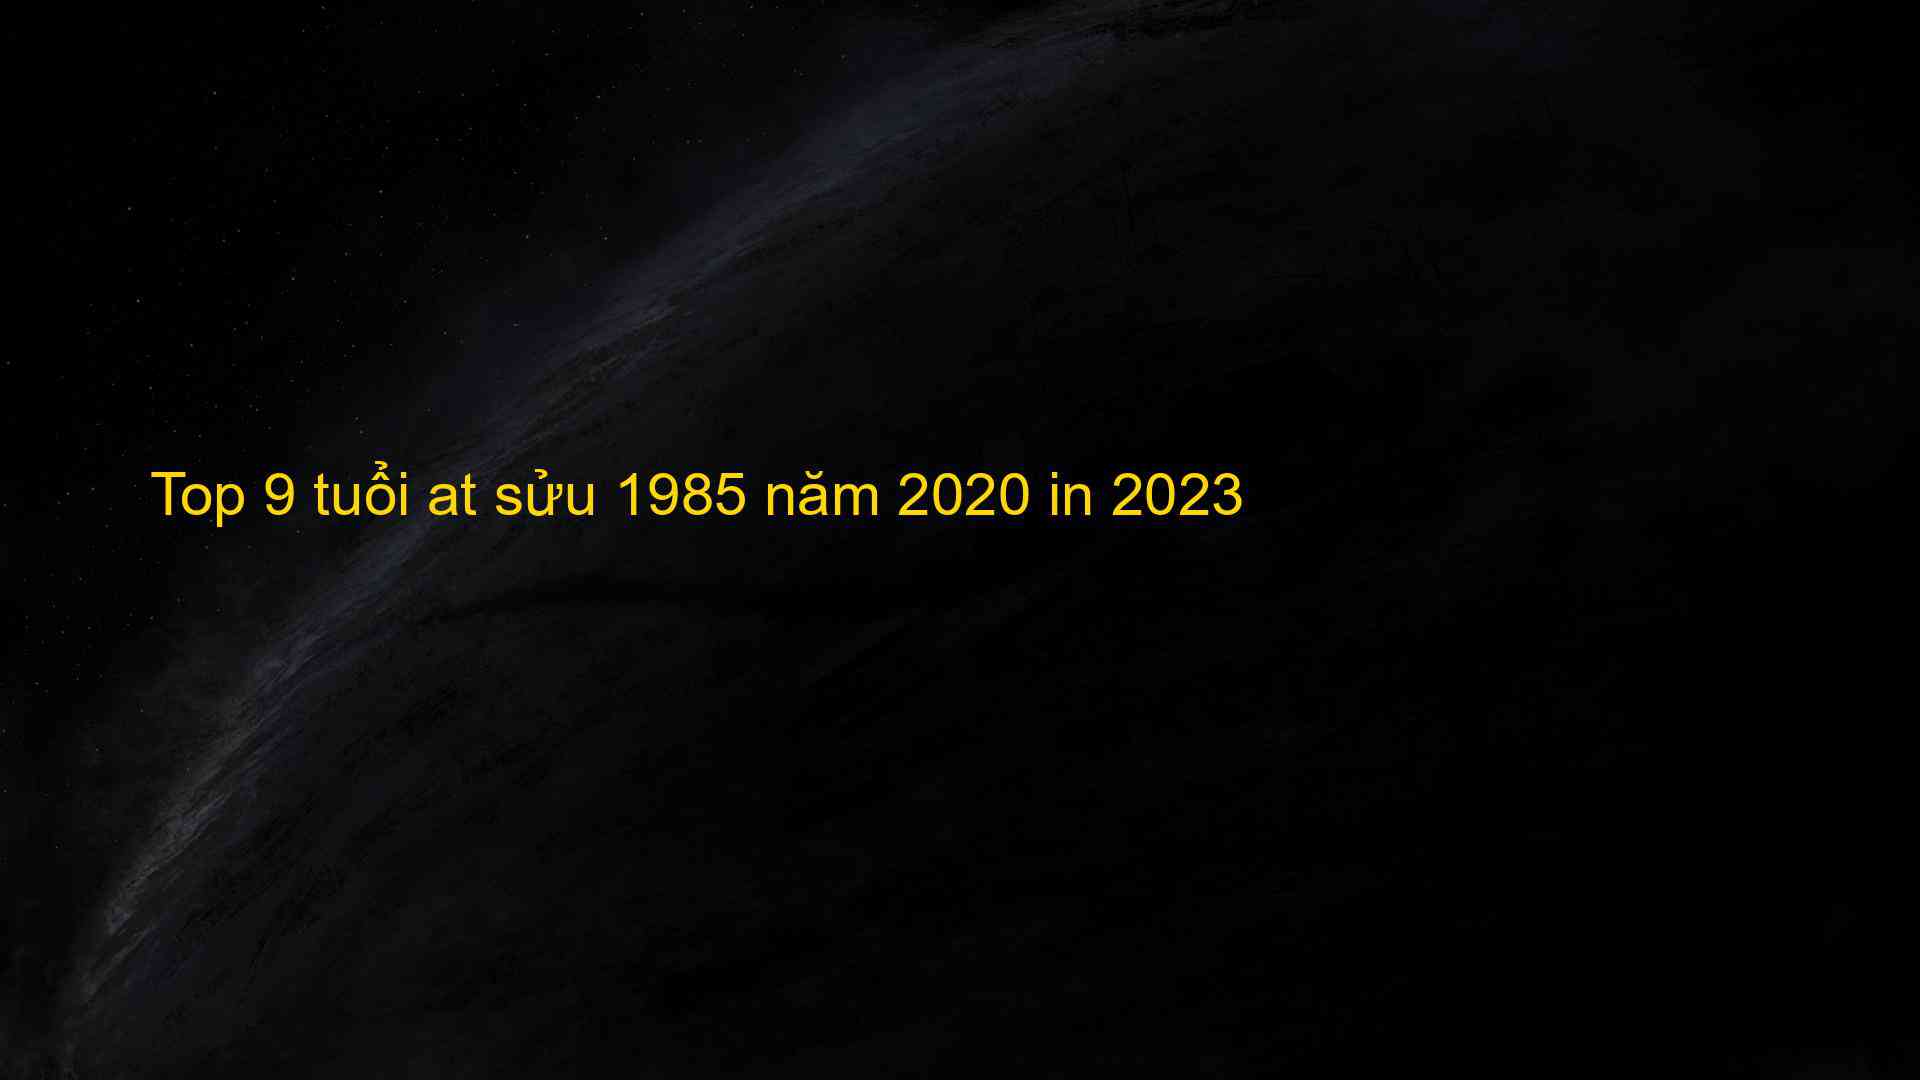 Top 9 tuổi at sửu 1985 năm 2020 in 2023 - Kiến Thức Cho Người lao Động Việt Nam